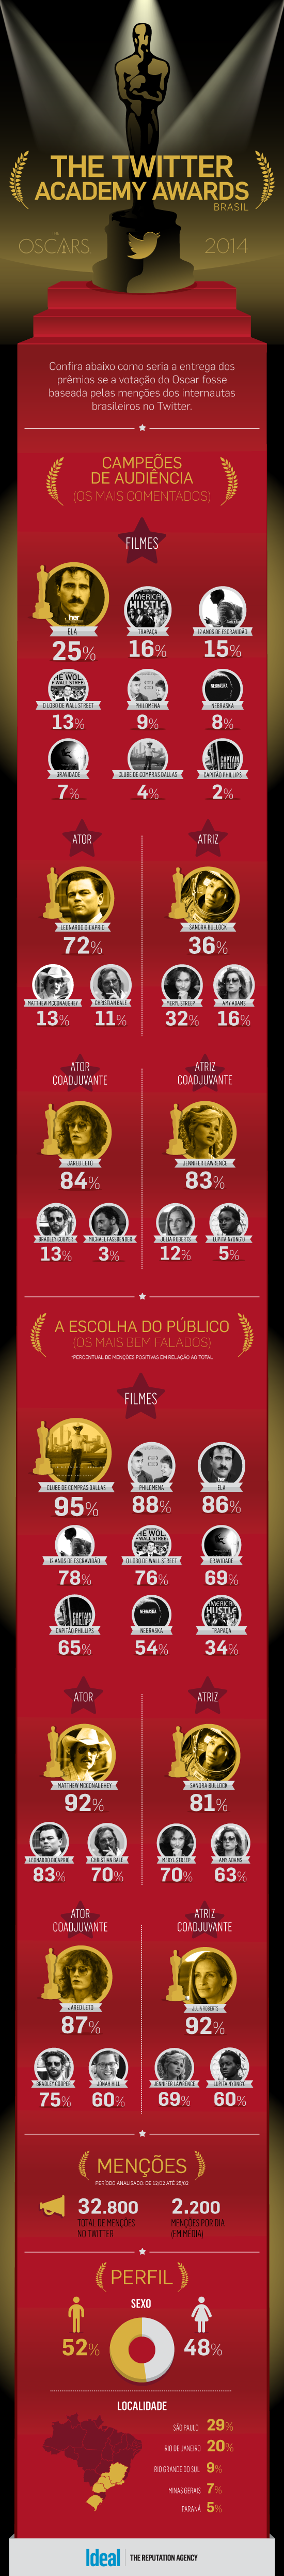 Infográfico - Os preferidos do Oscar no Twitter